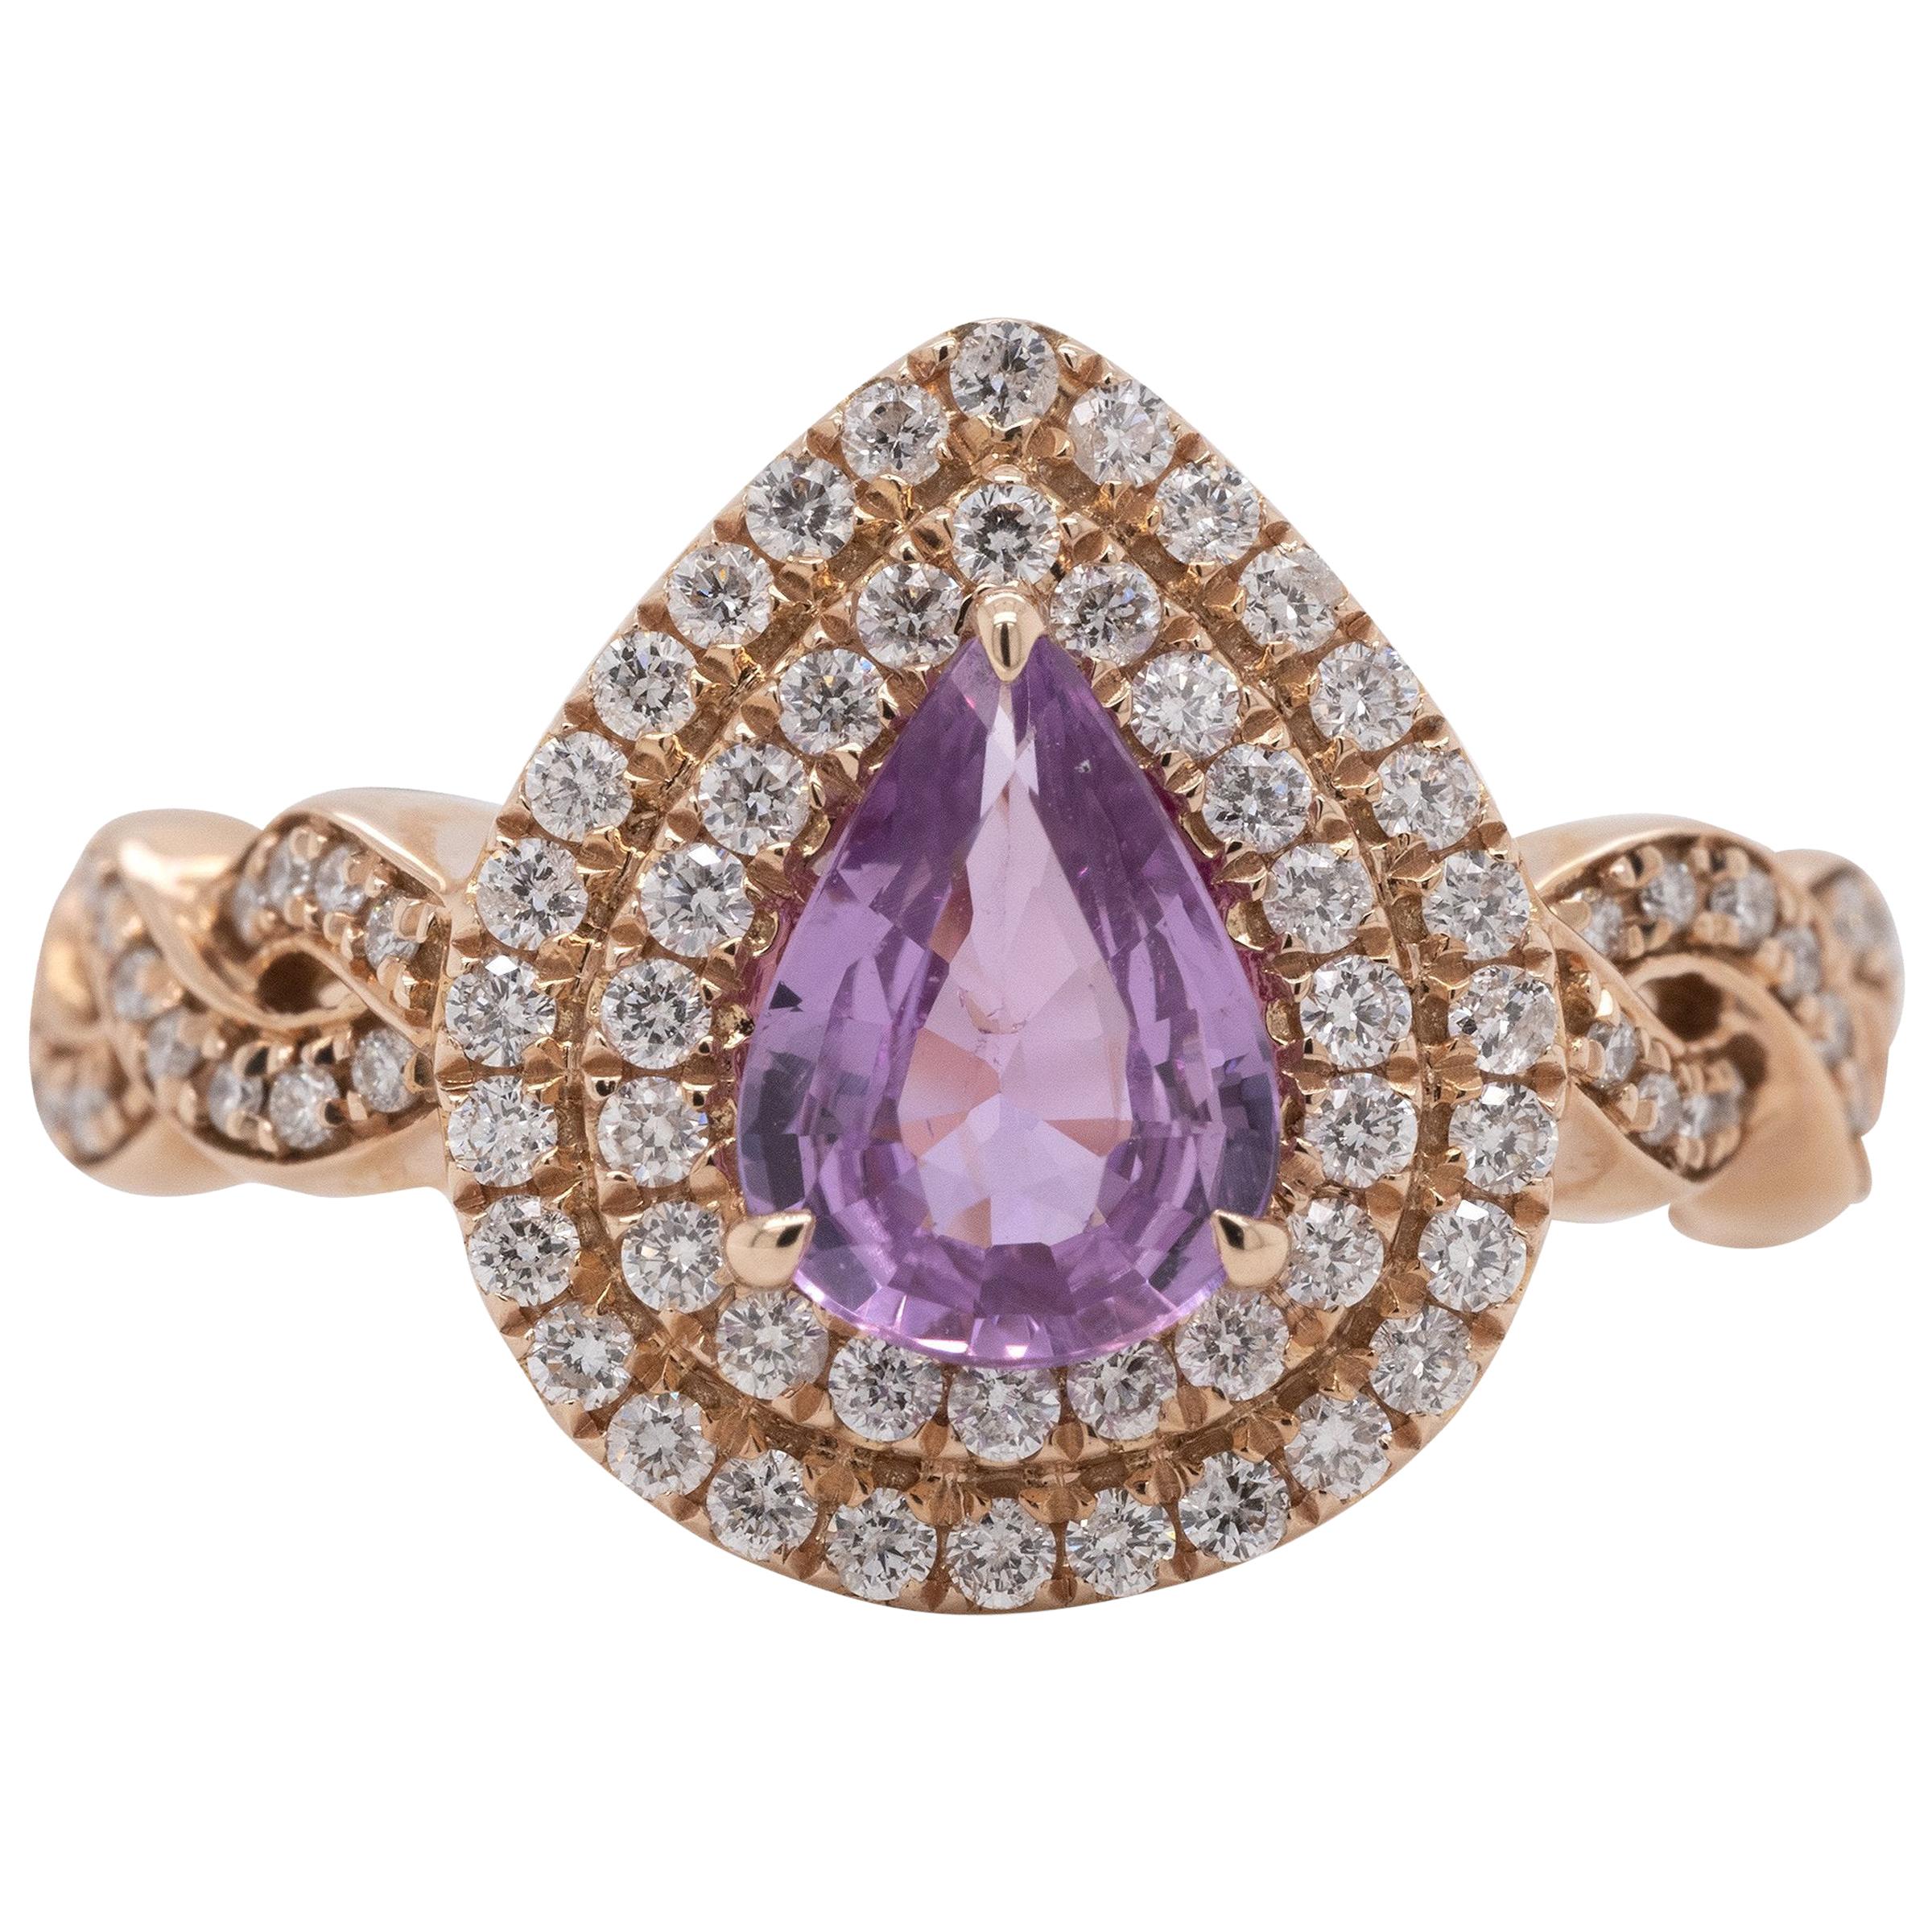 Gem Bleu No Heat Purplish-Pink Sapphire 0.91 Carat Ring in 14 Karat Rose Gold